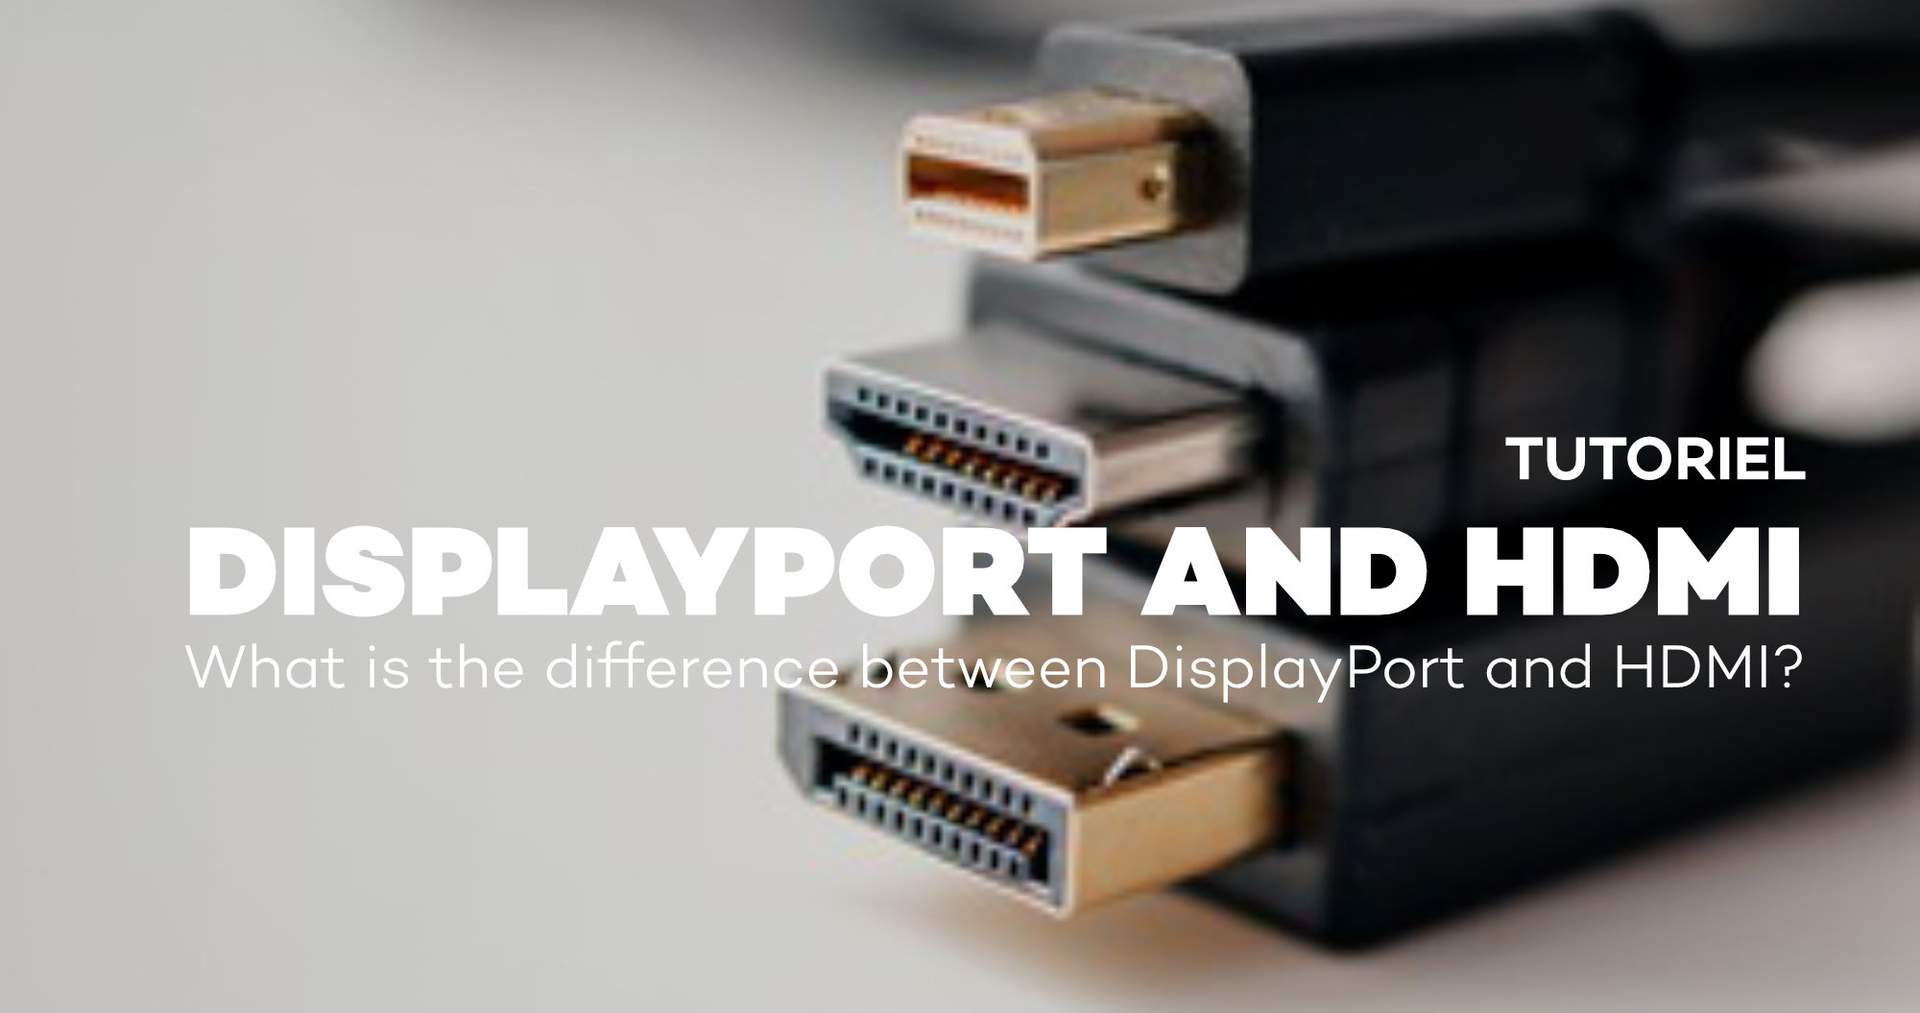 La différence entre le Displayport et HDMI